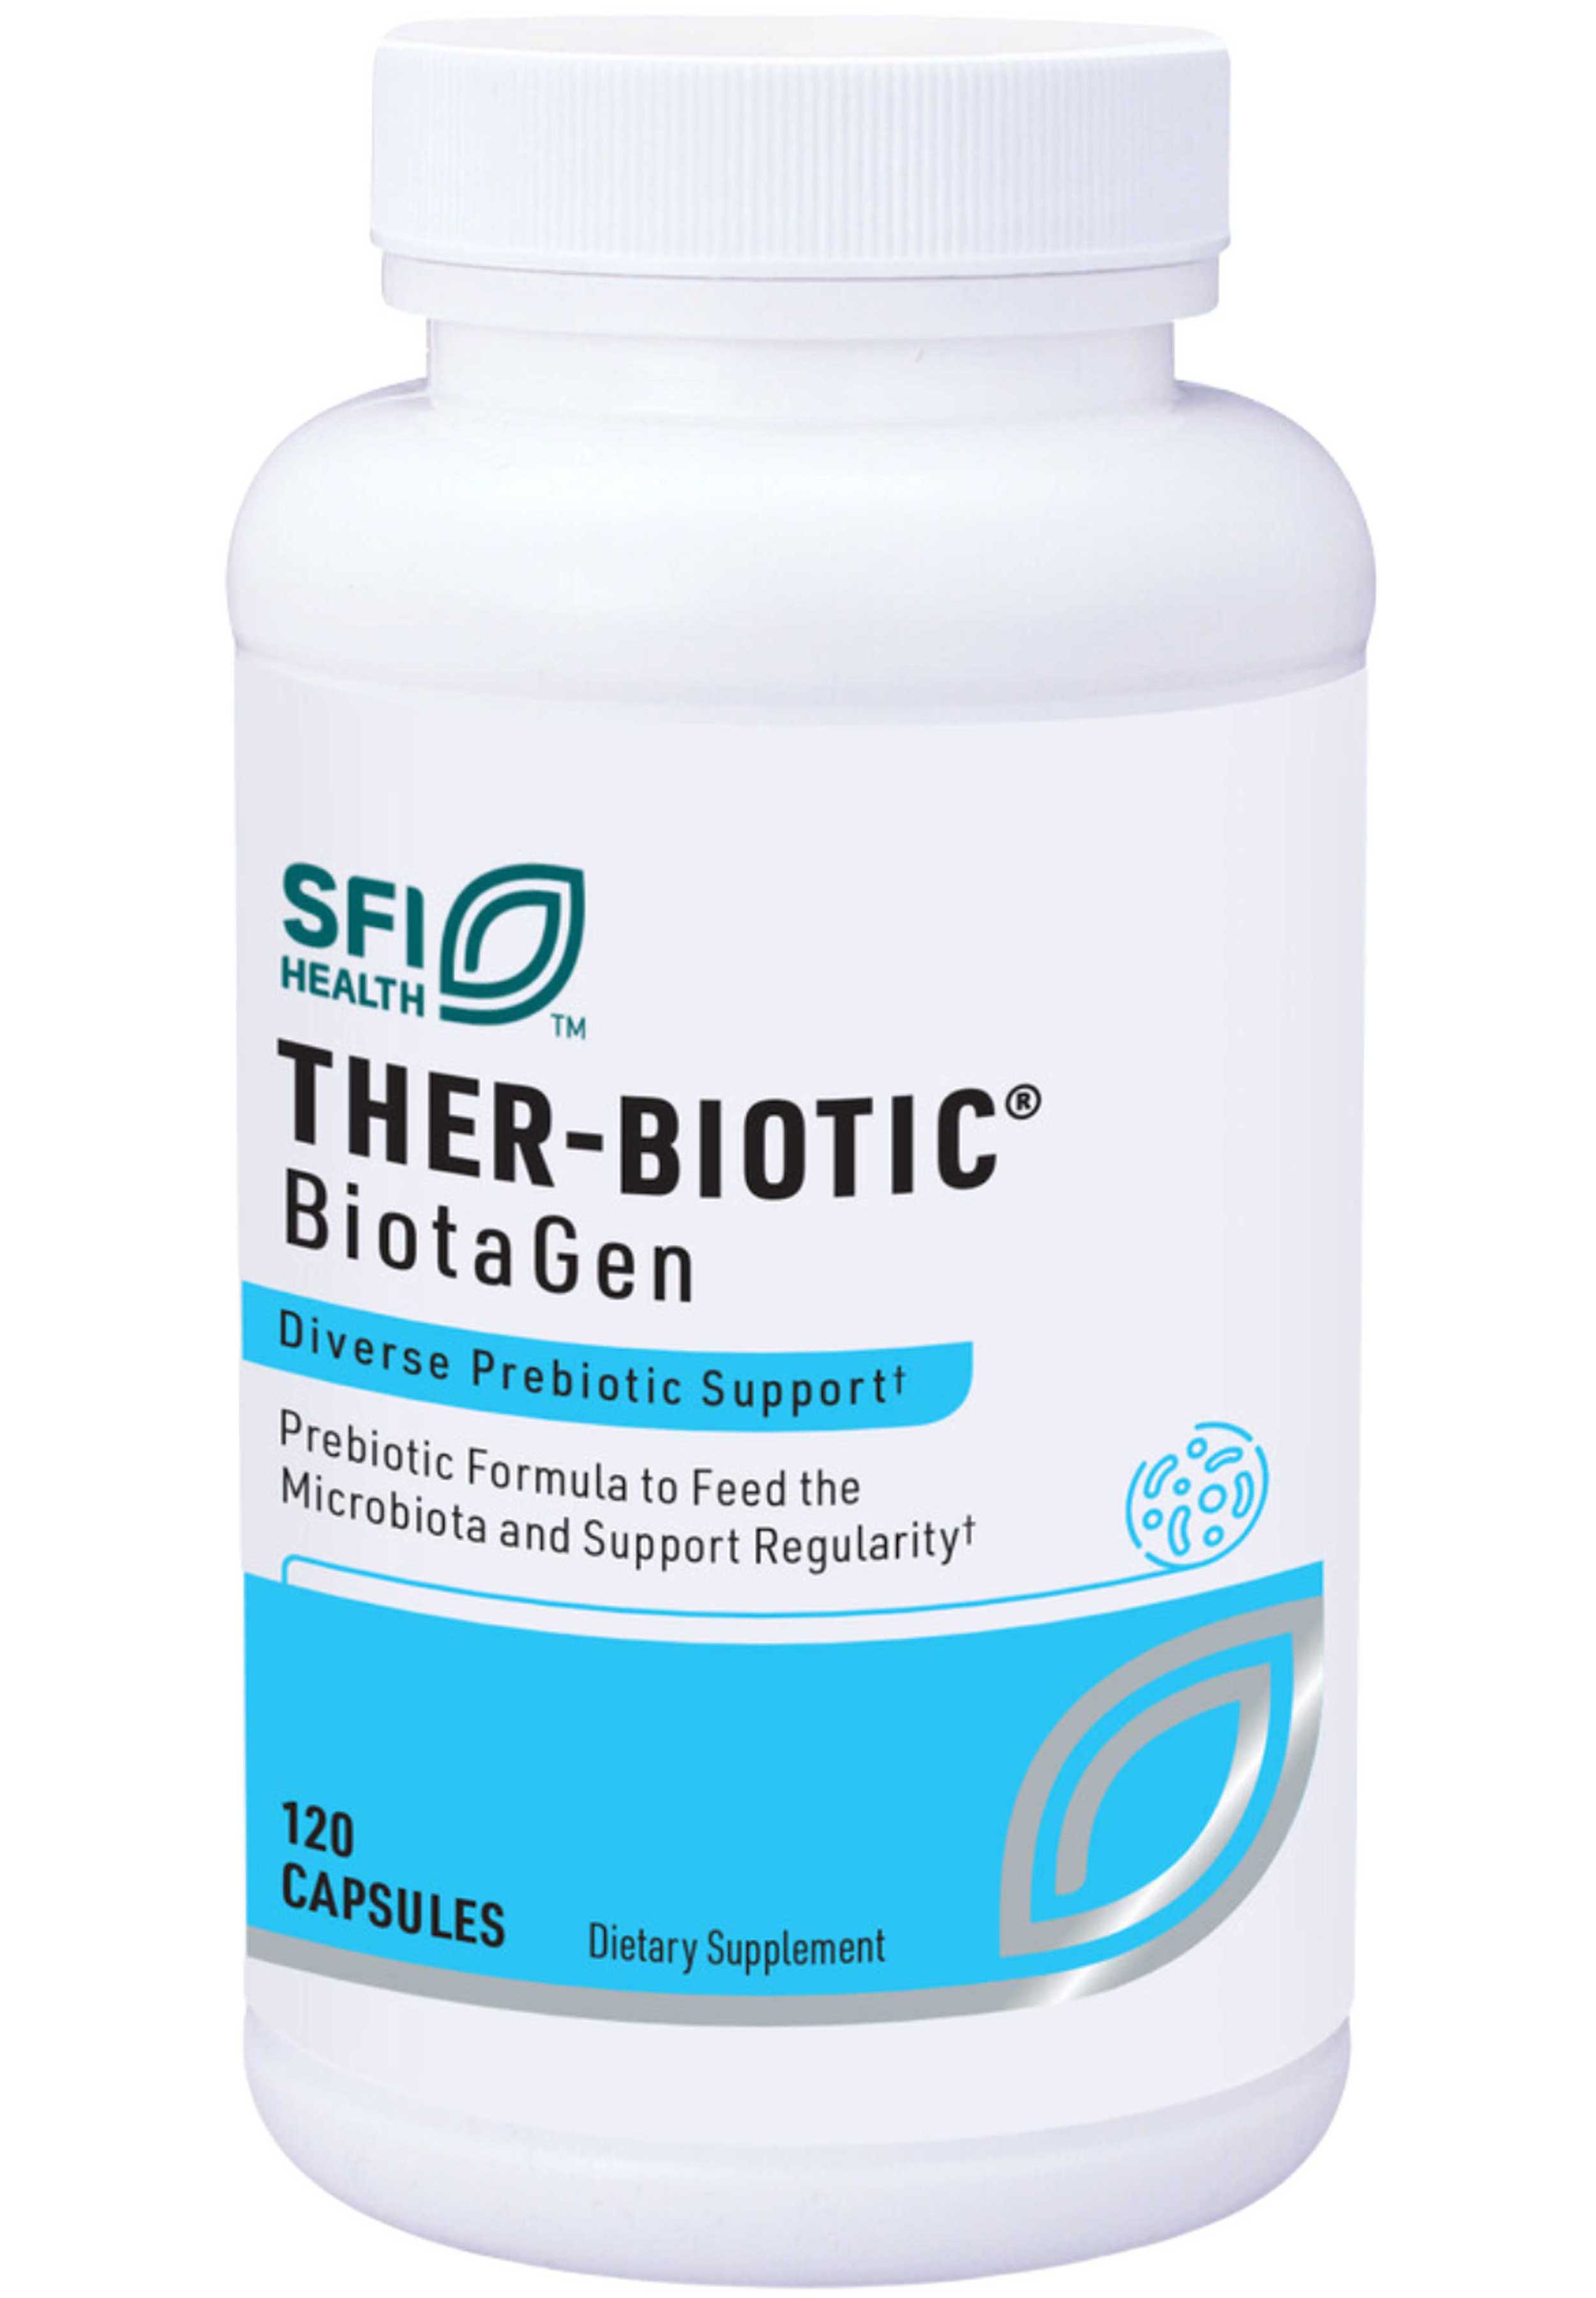 Klaire Labs Ther-Biotic® BiotaGen